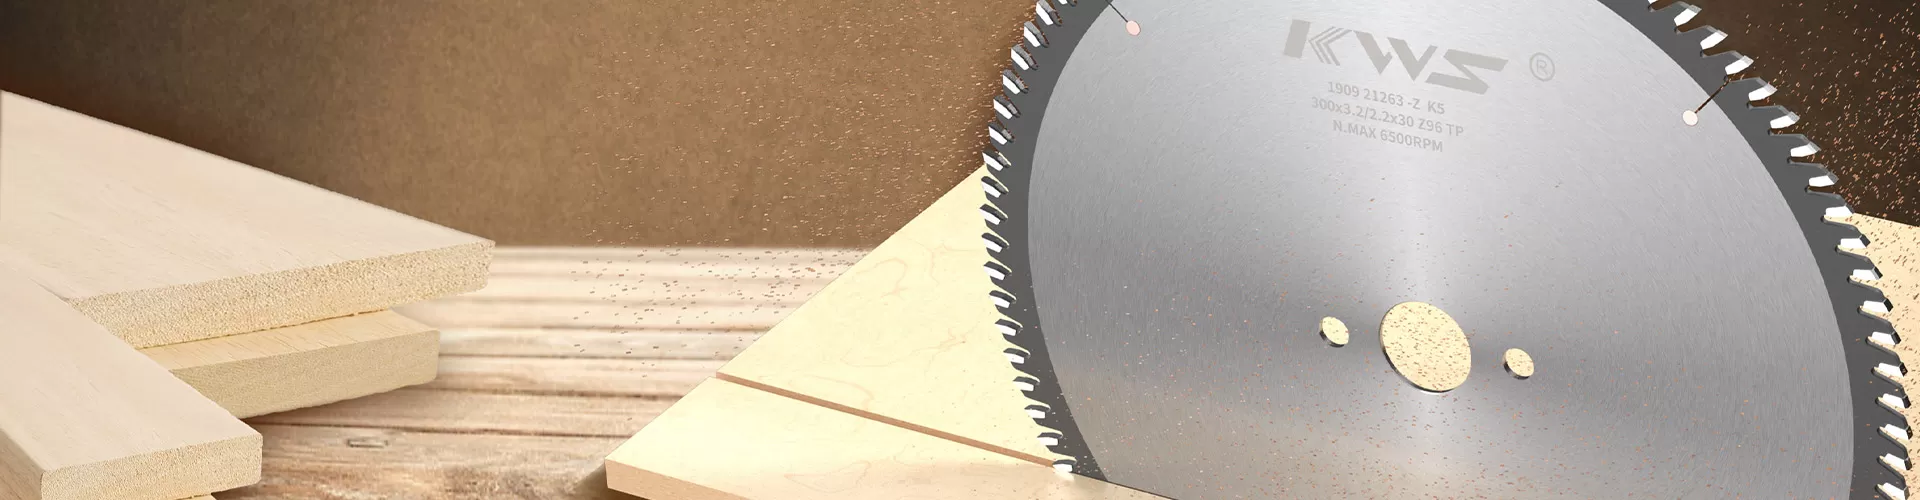 Пильный диск для обработки канавок для обработки алюминия